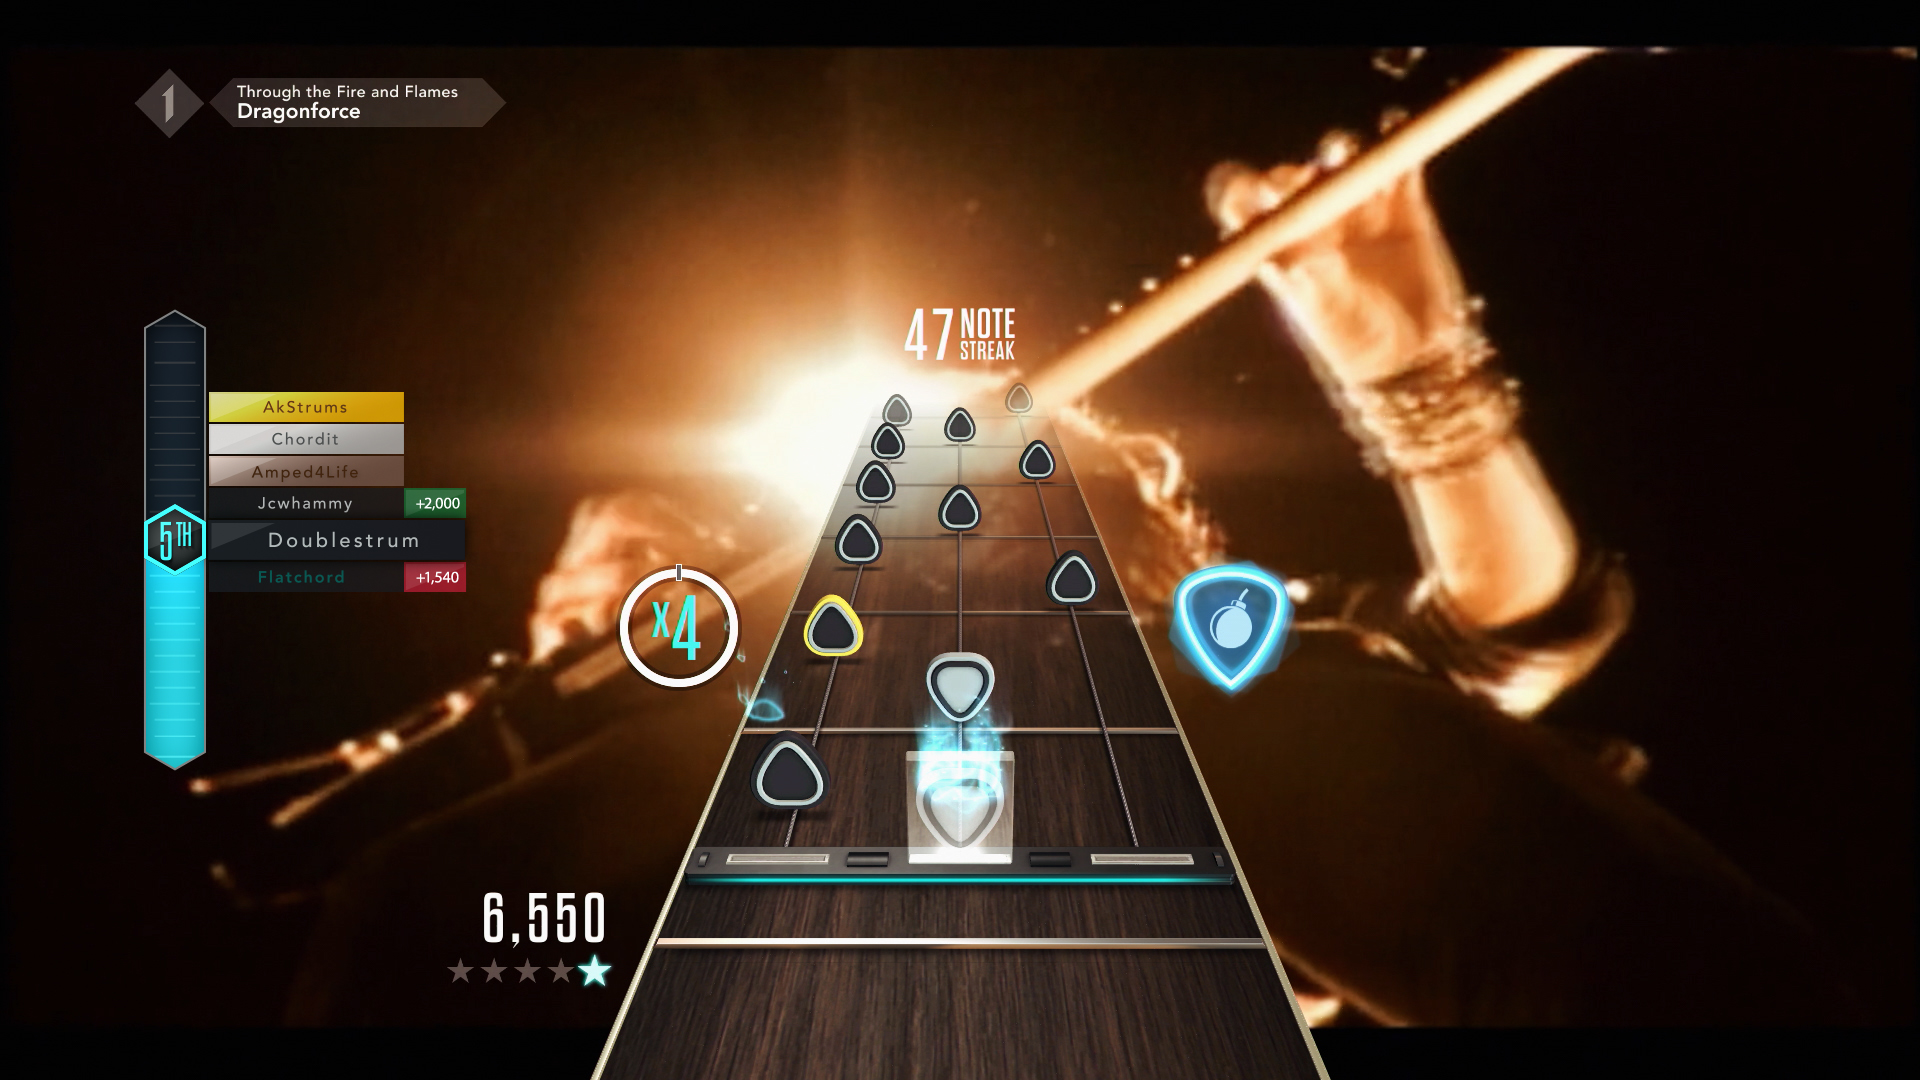 Guitar Hero Live pour PS4 : : Jeux vidéo